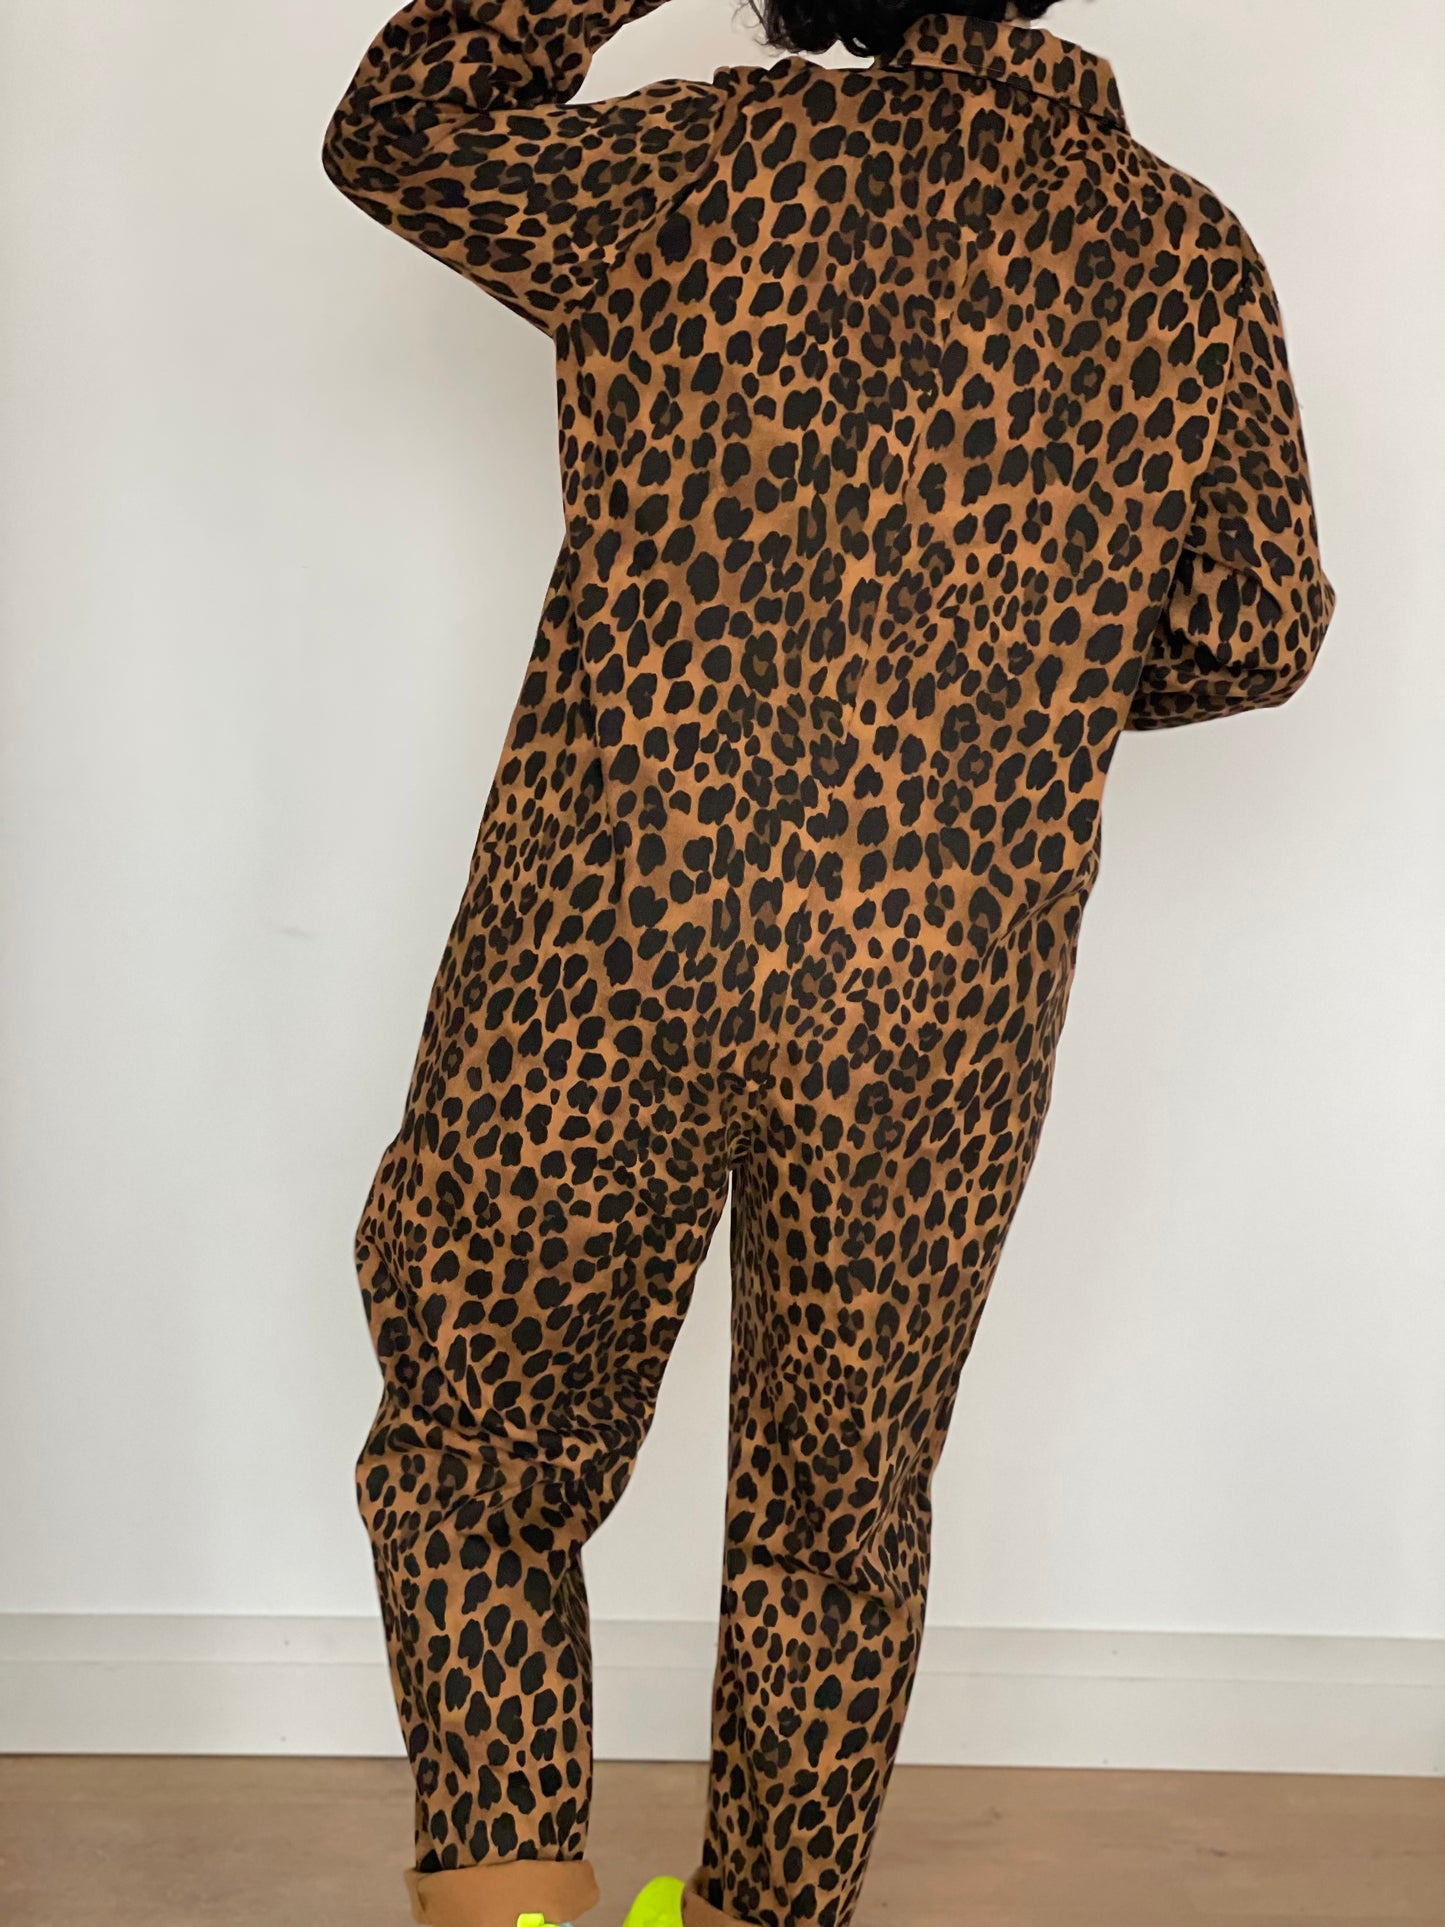 Baggy Boilersuit - Leopard